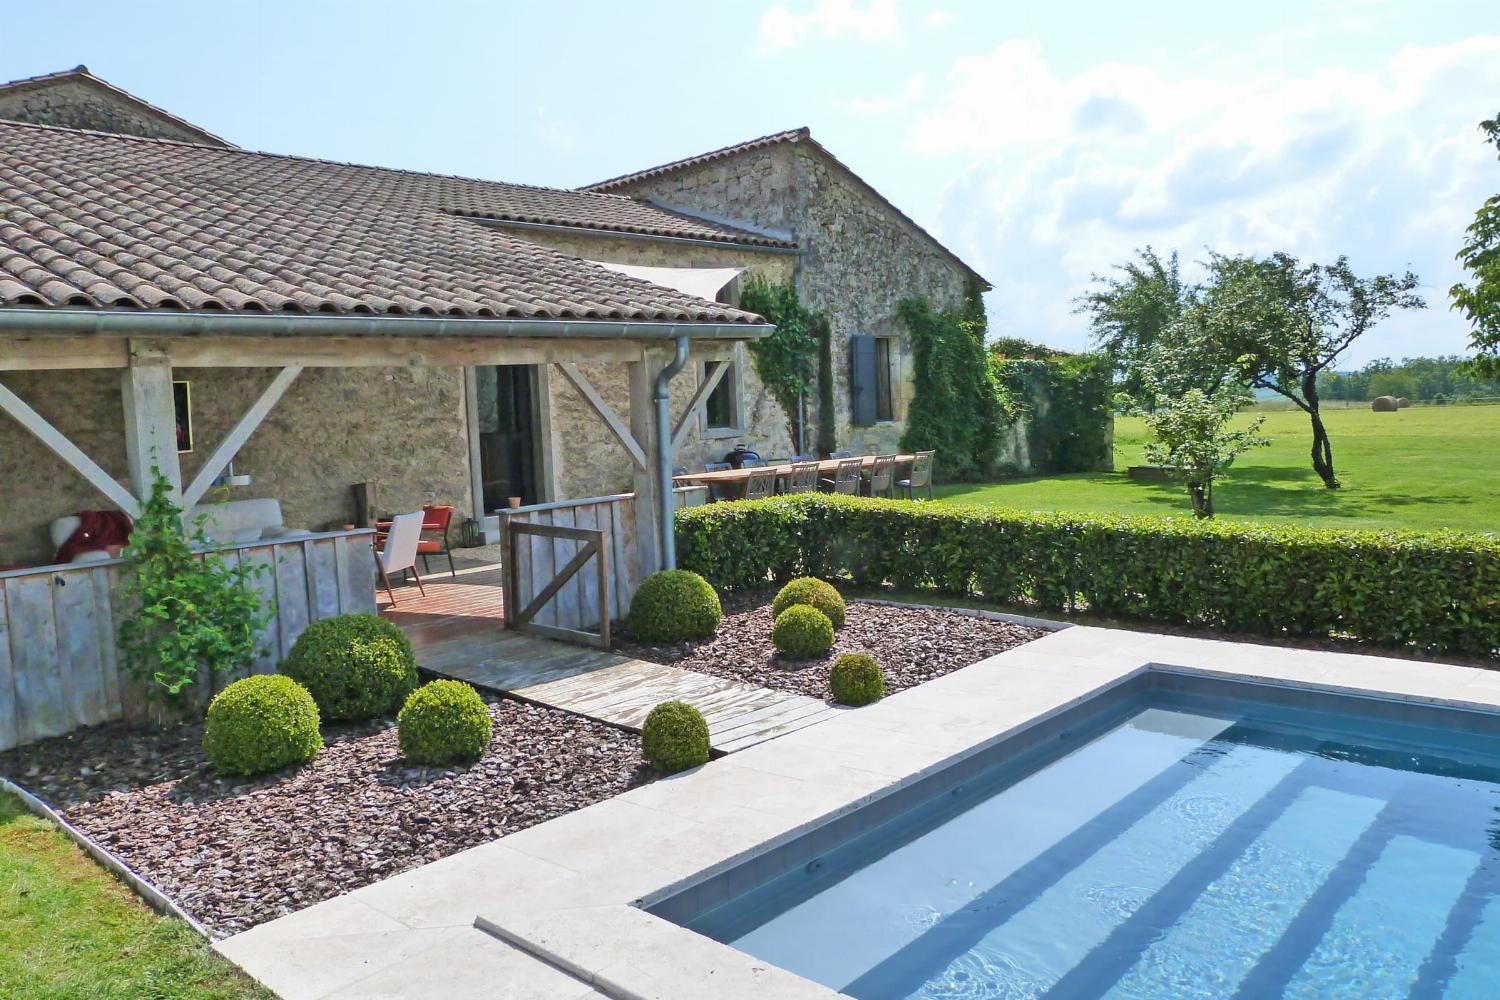 Maison de vacances dans le sud-ouest de la France avec piscine privée chauffée